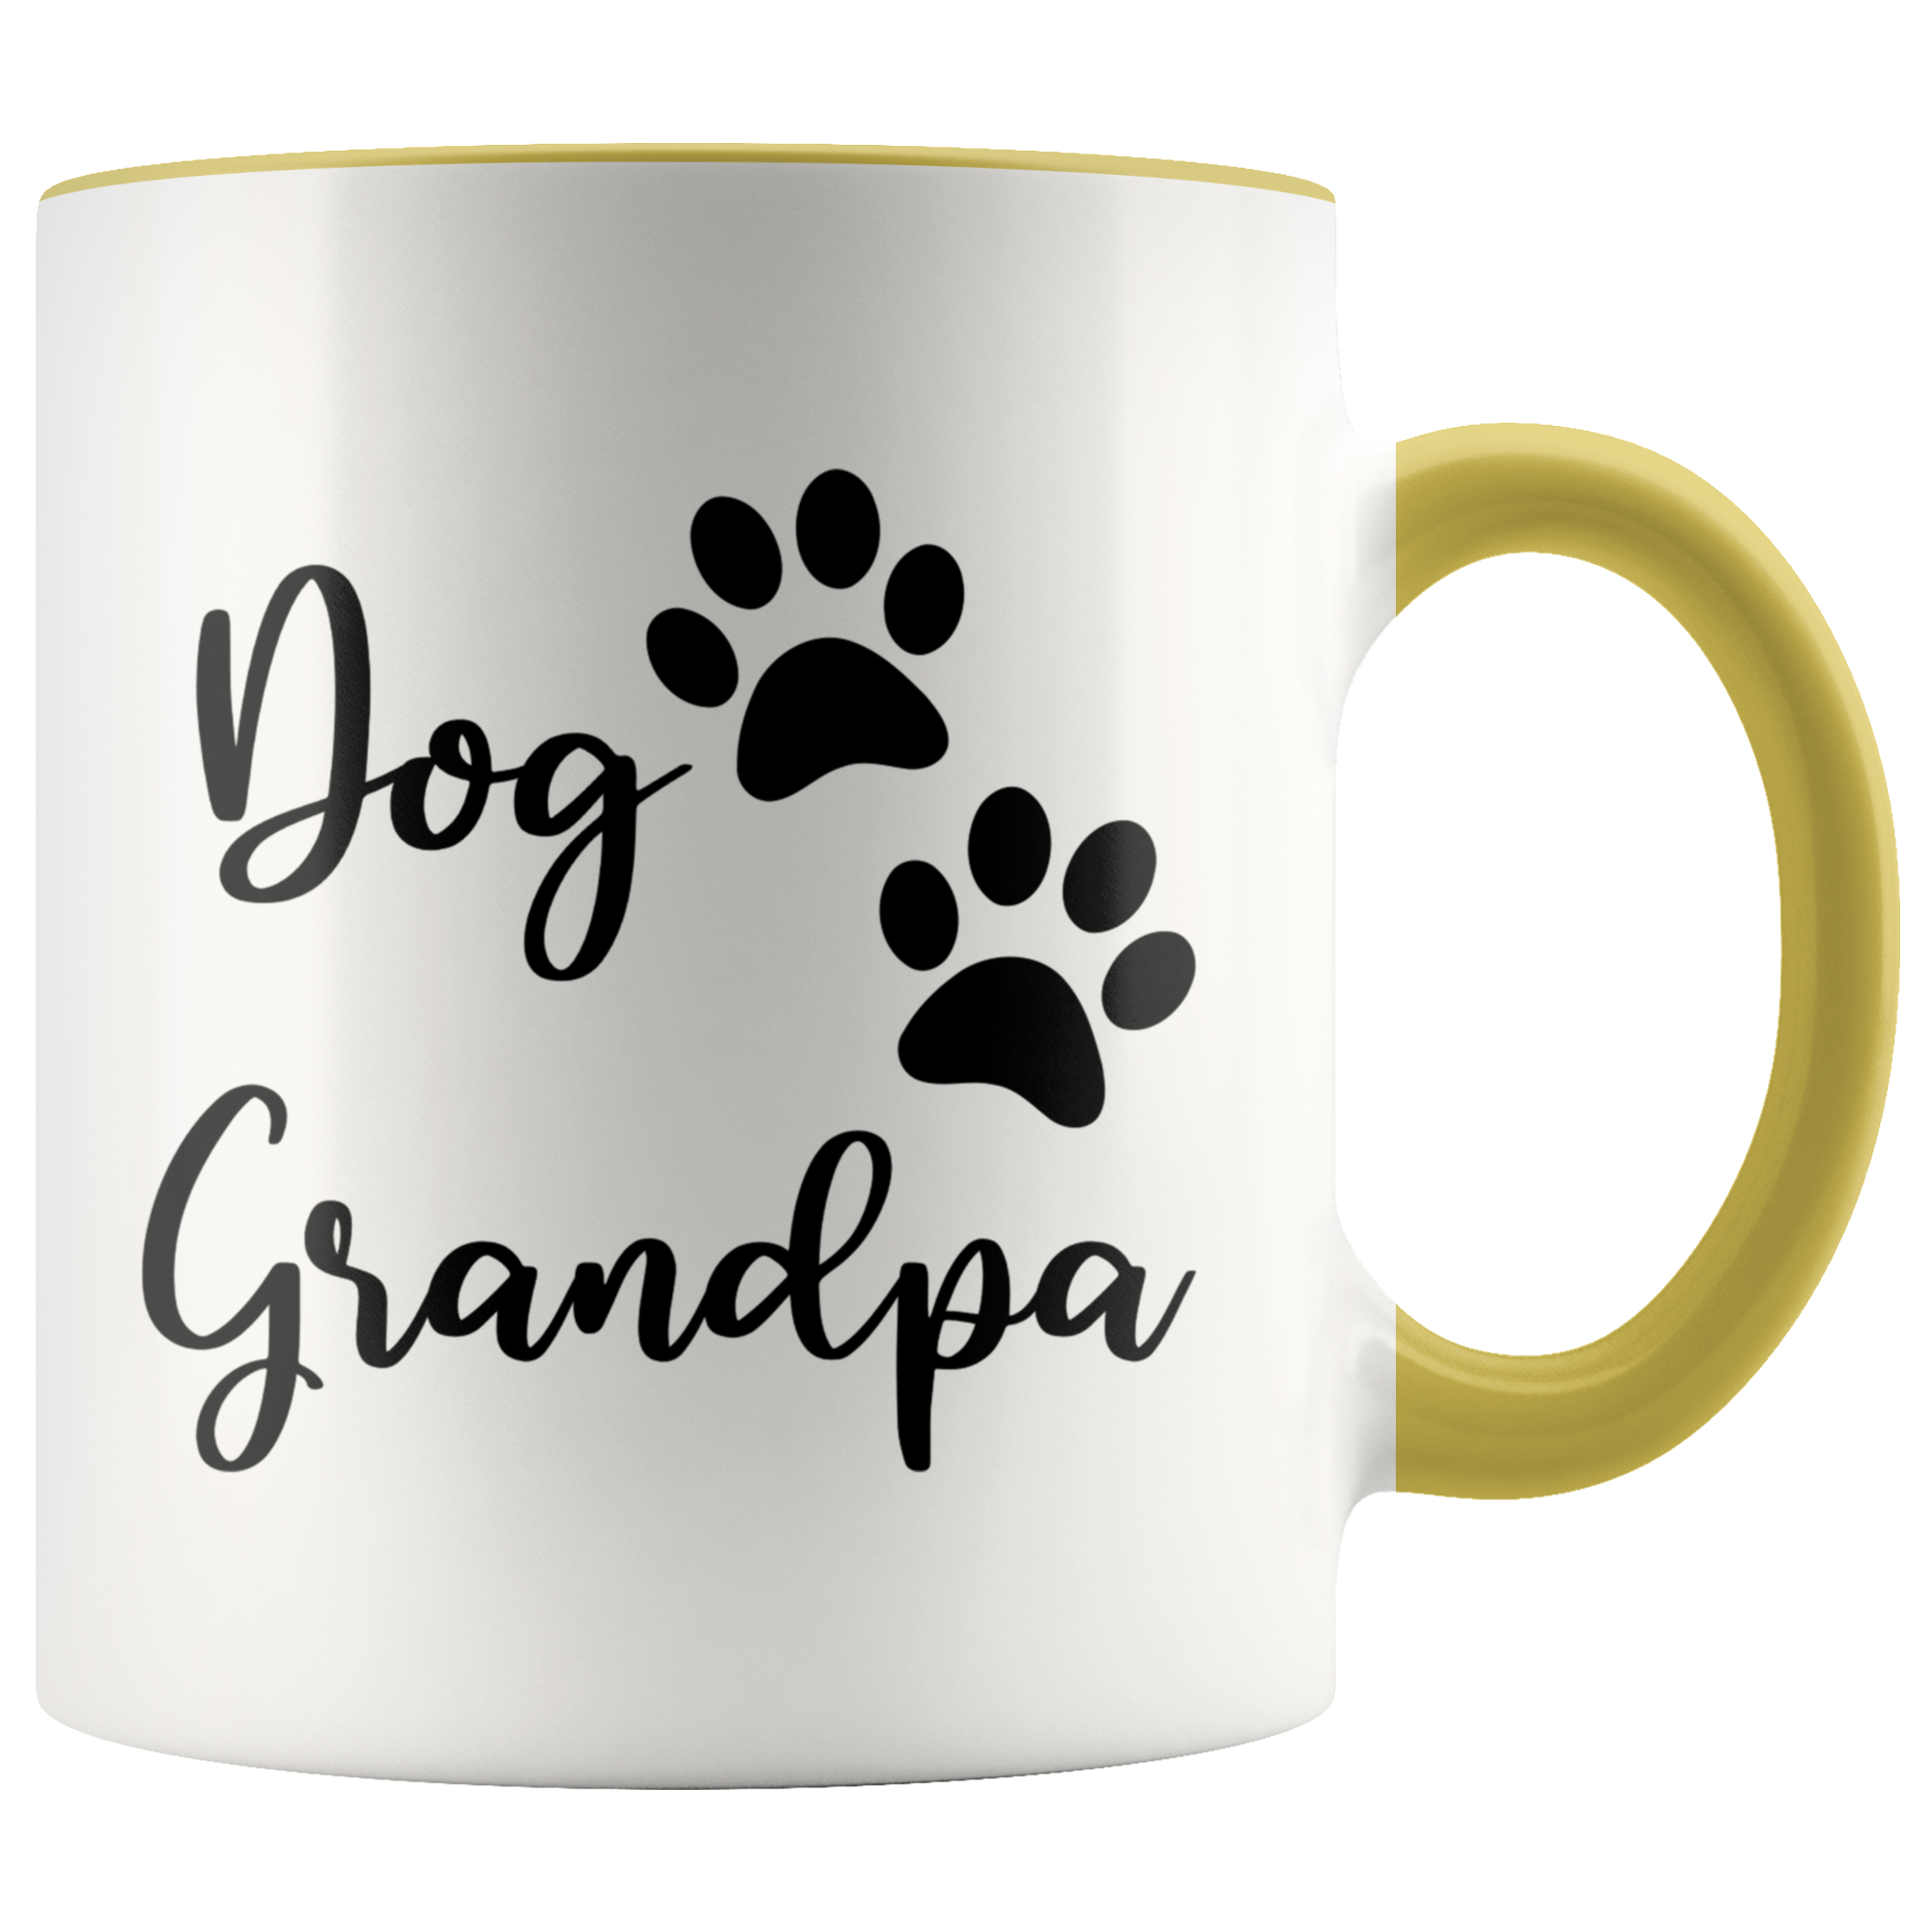 Dog Grandpa Mug